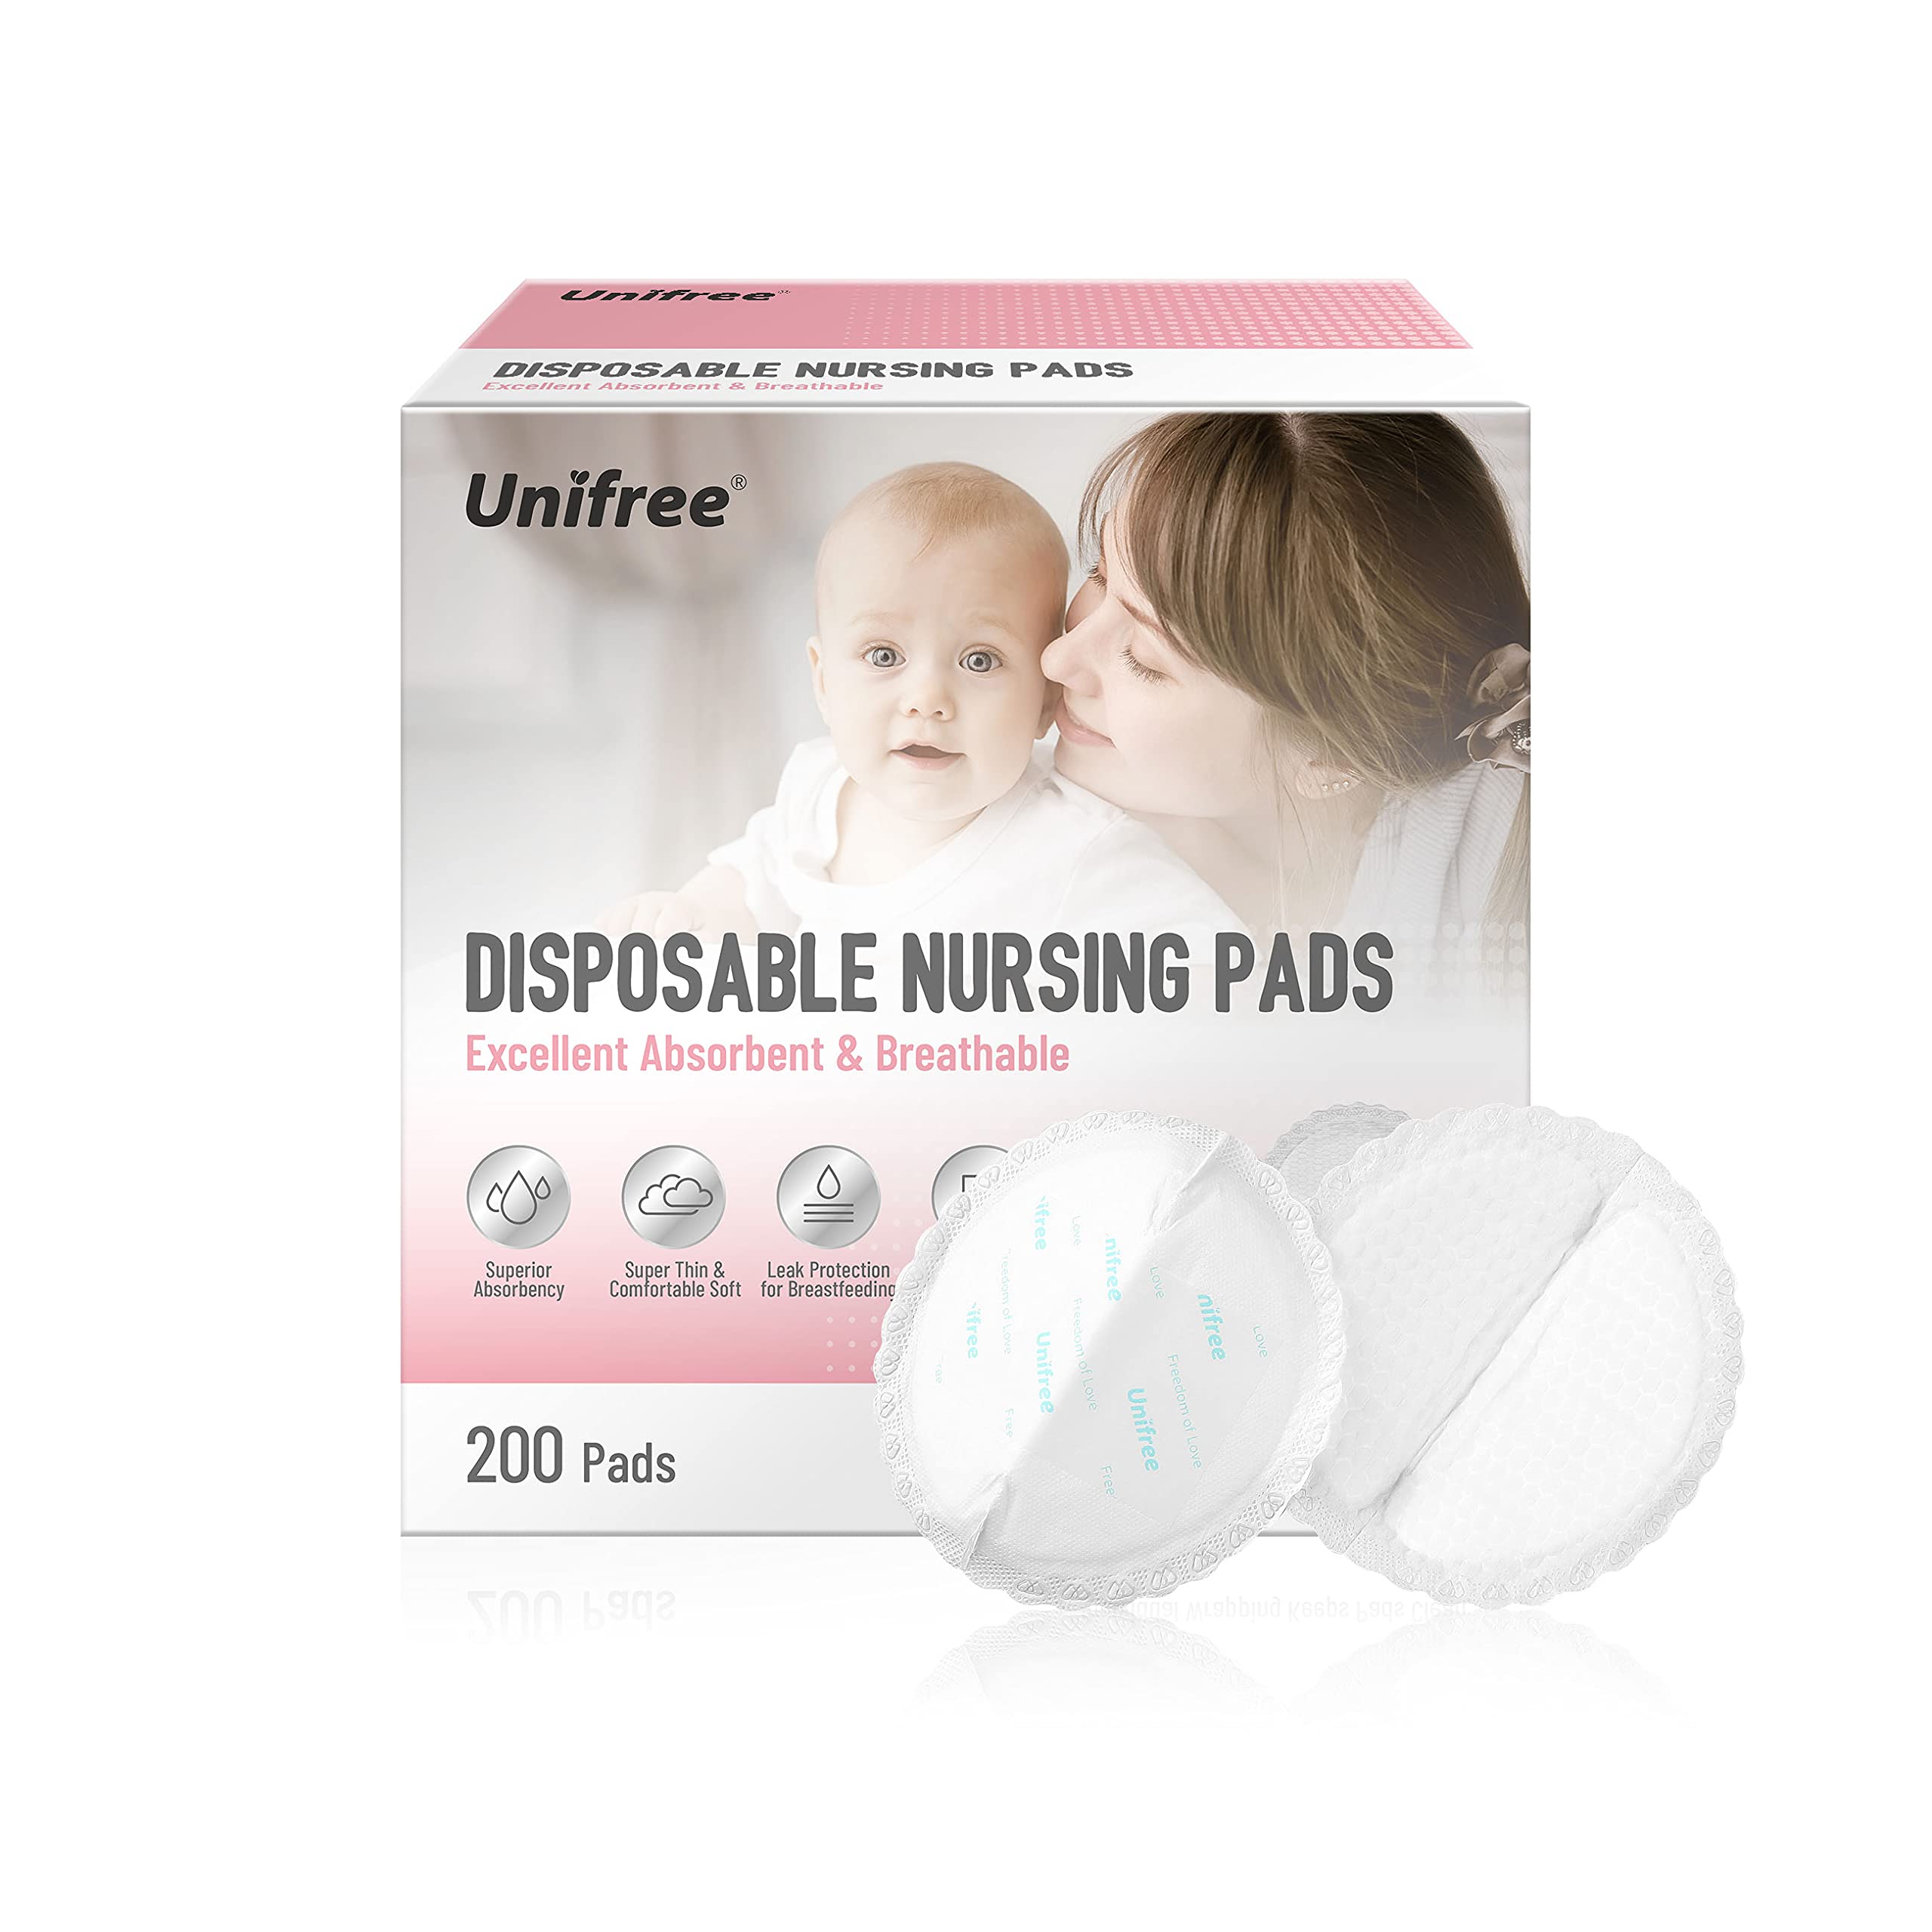 Unifree Premium Disposable Nursing Pads 200 Count Superior